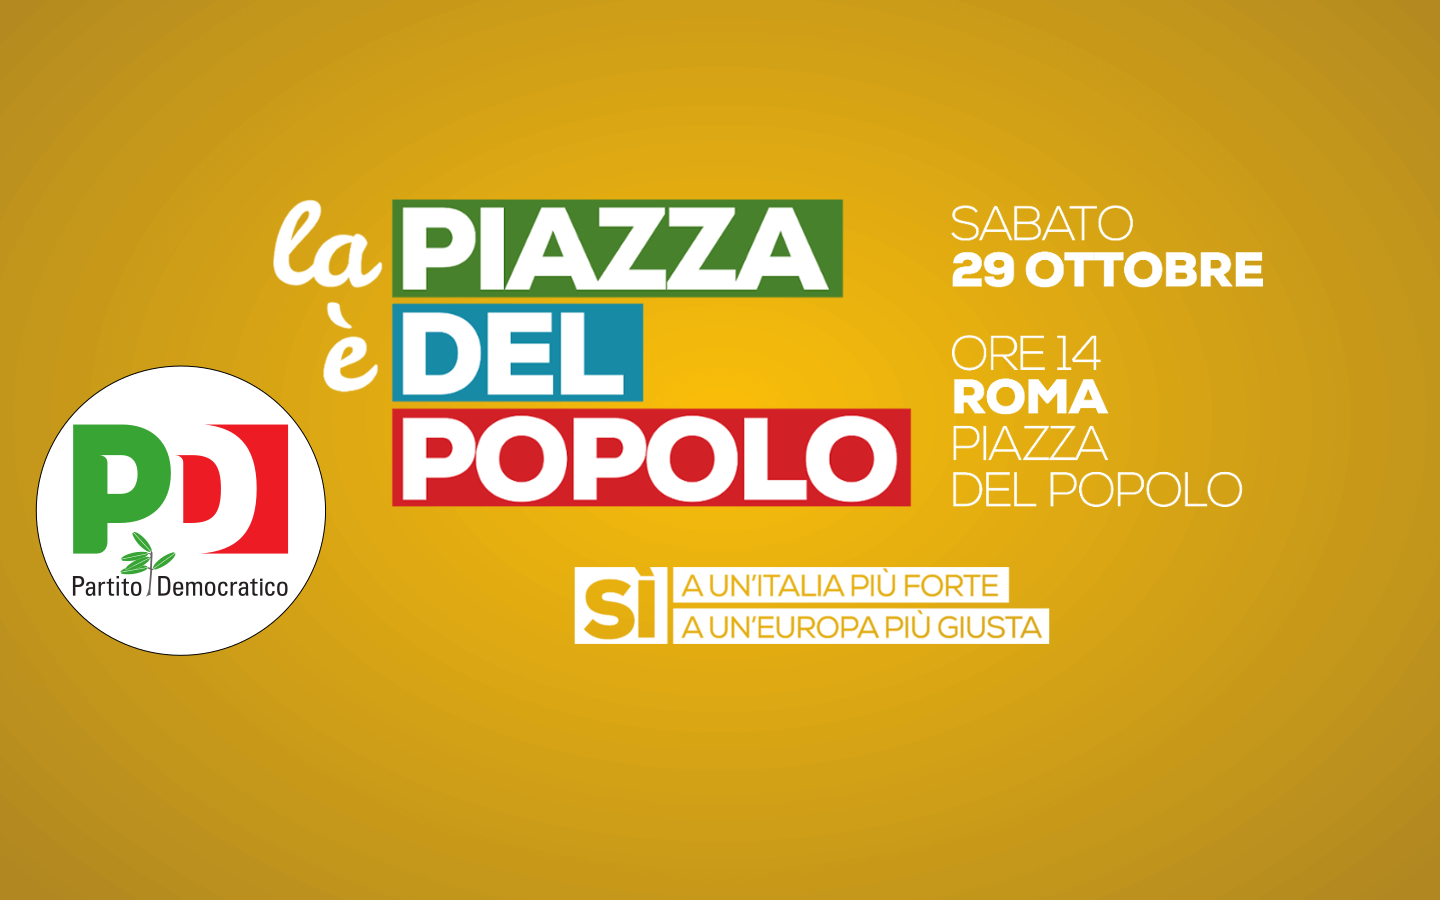 2016.10.27 La piazza e del popolo tutti a Roma il 29 ottobre